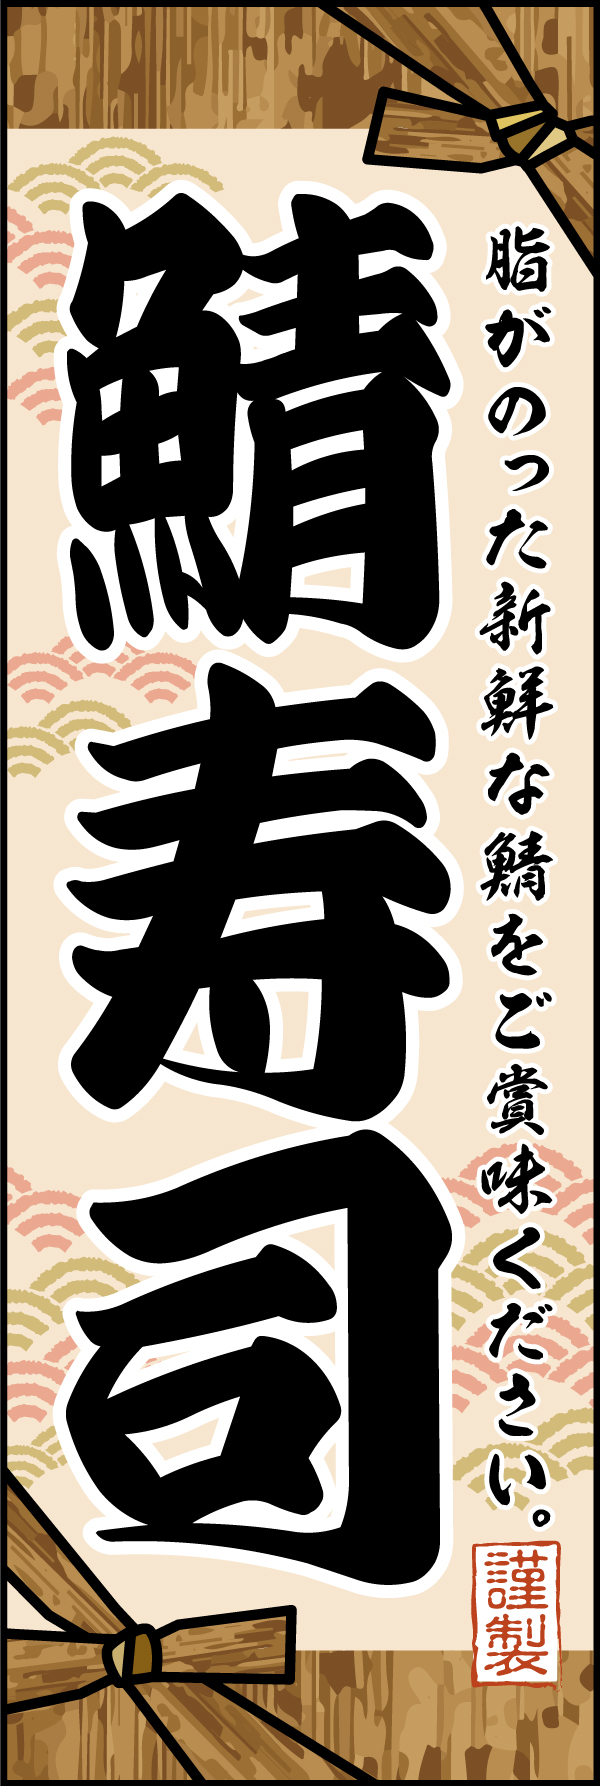 鯖寿司 193_01「鯖寿司」のぼりです。お寿司を包む竹皮をイメージして手作りの伝統的な雰囲気を表現できるようにデザインしました。（M.H） 